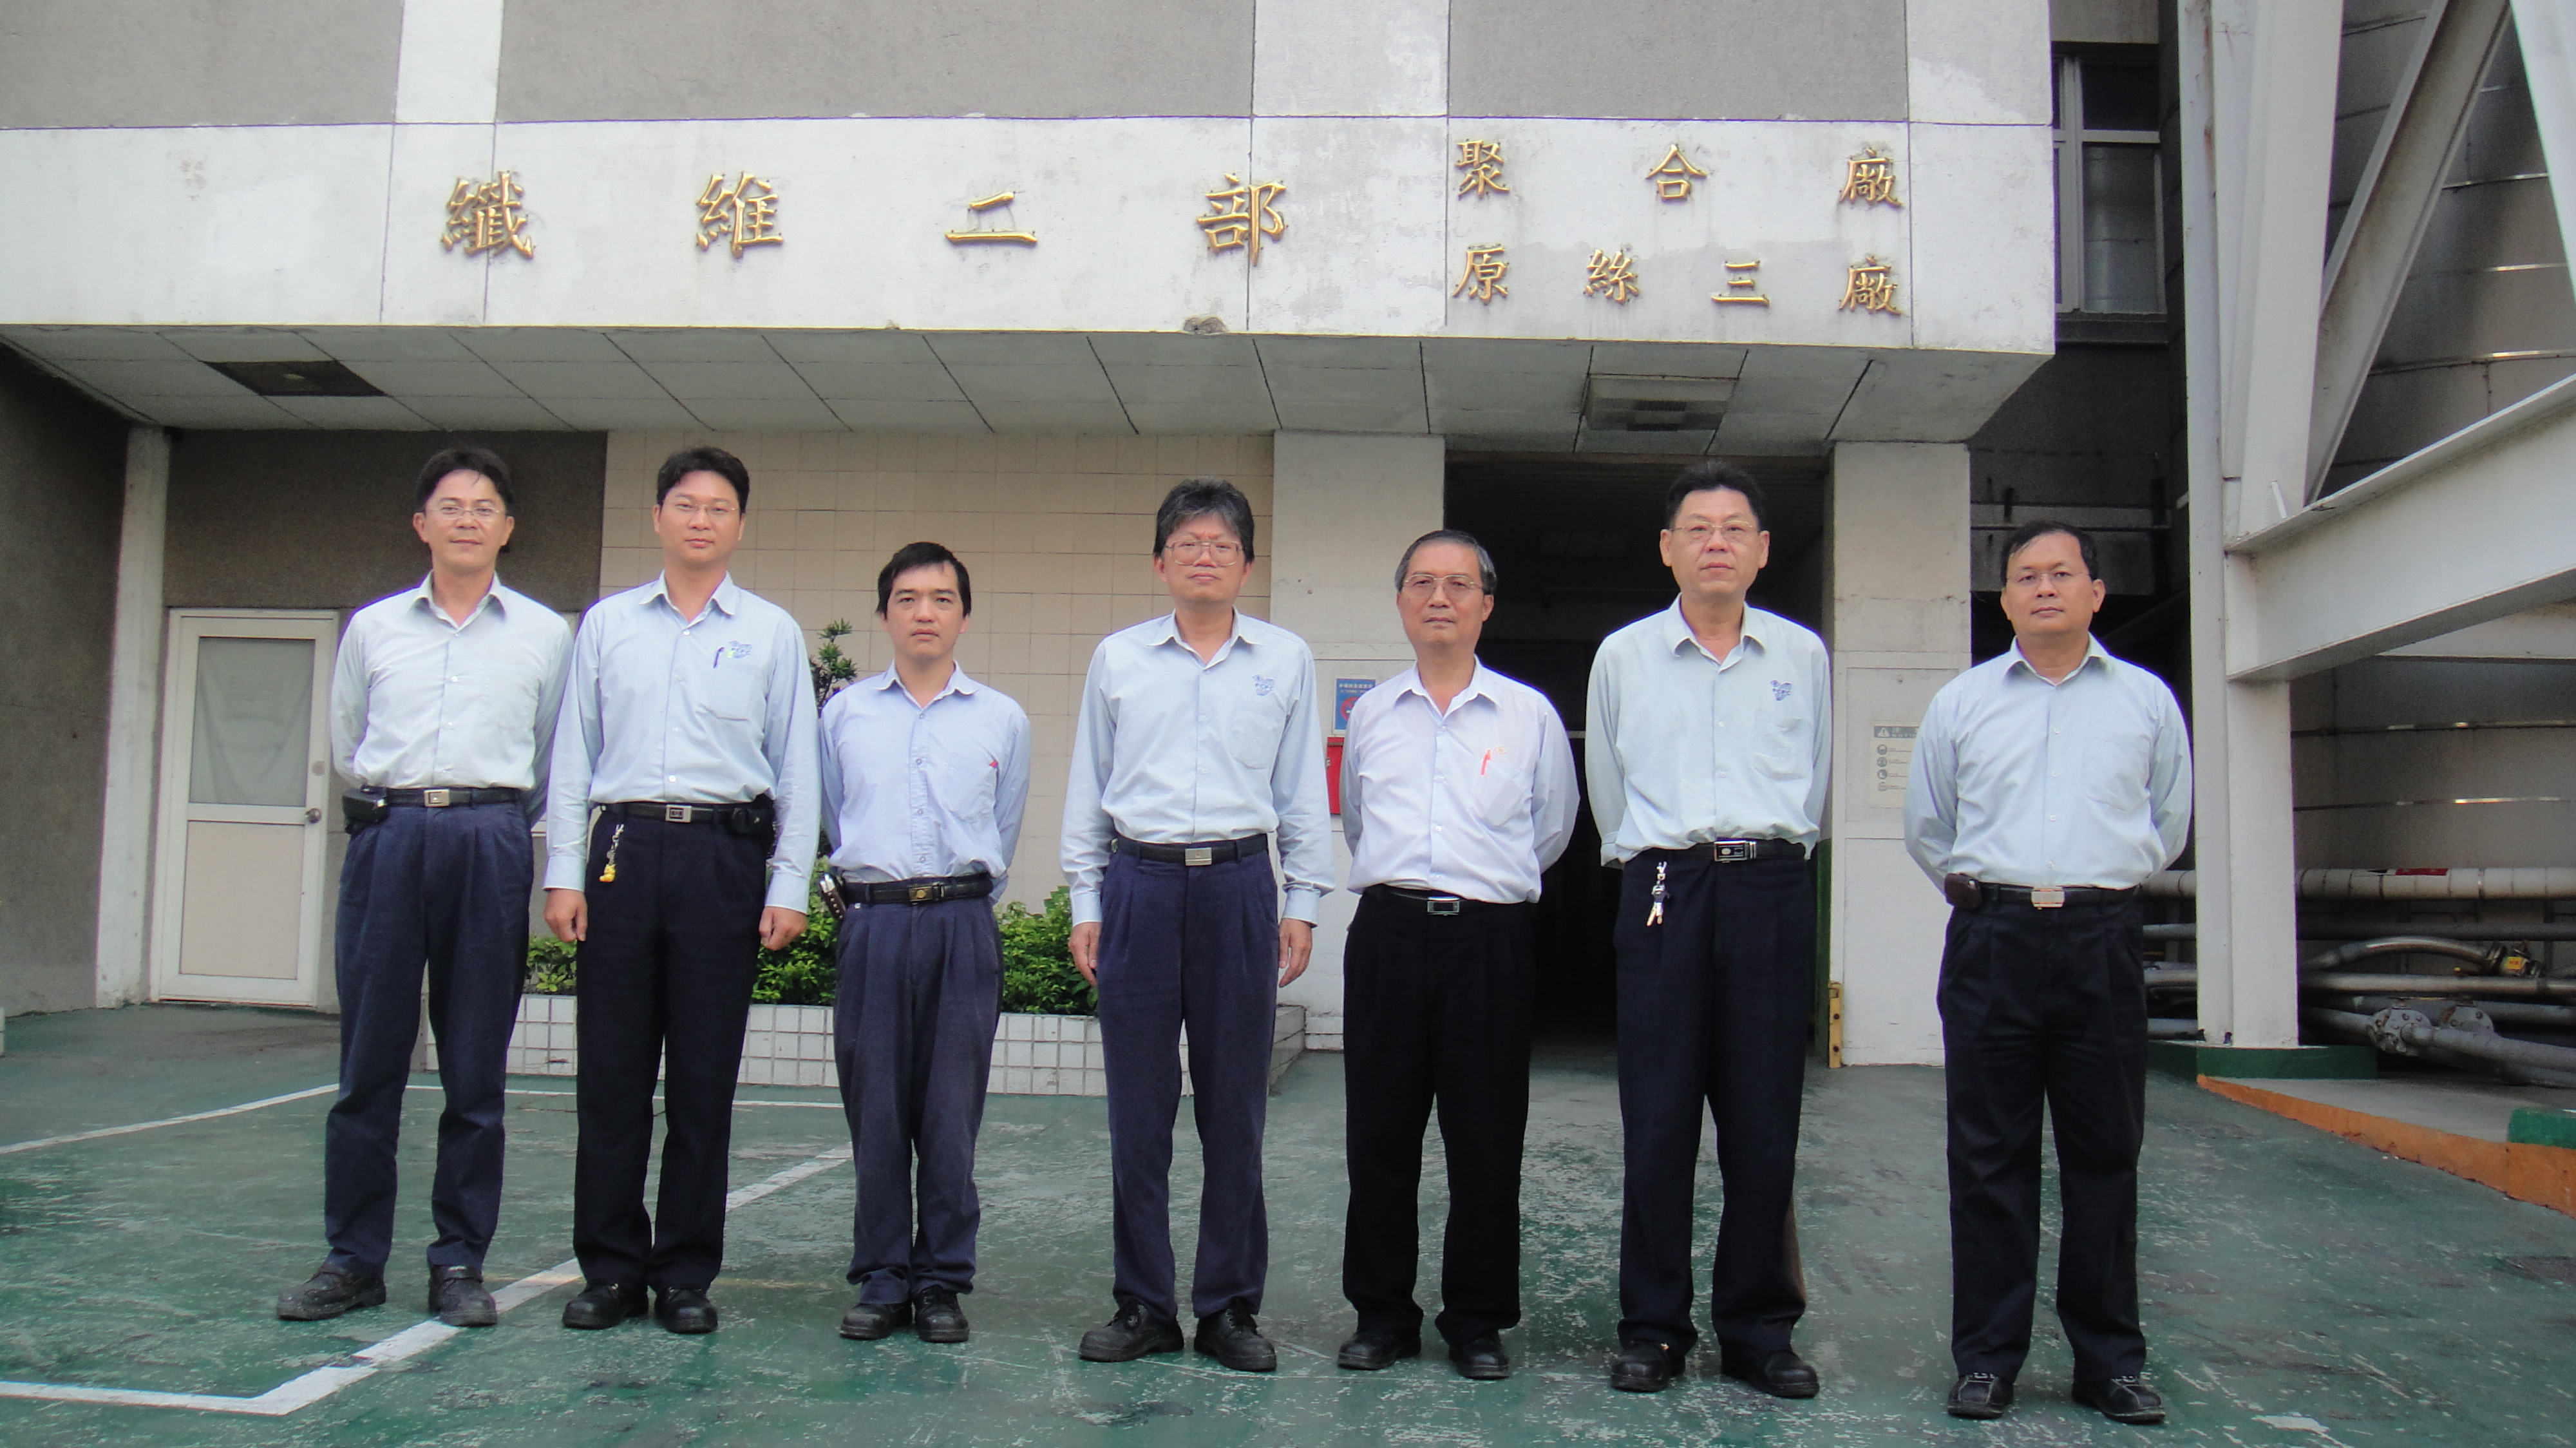 台灣化學纖維股份有限公司纖維二部聚合廠